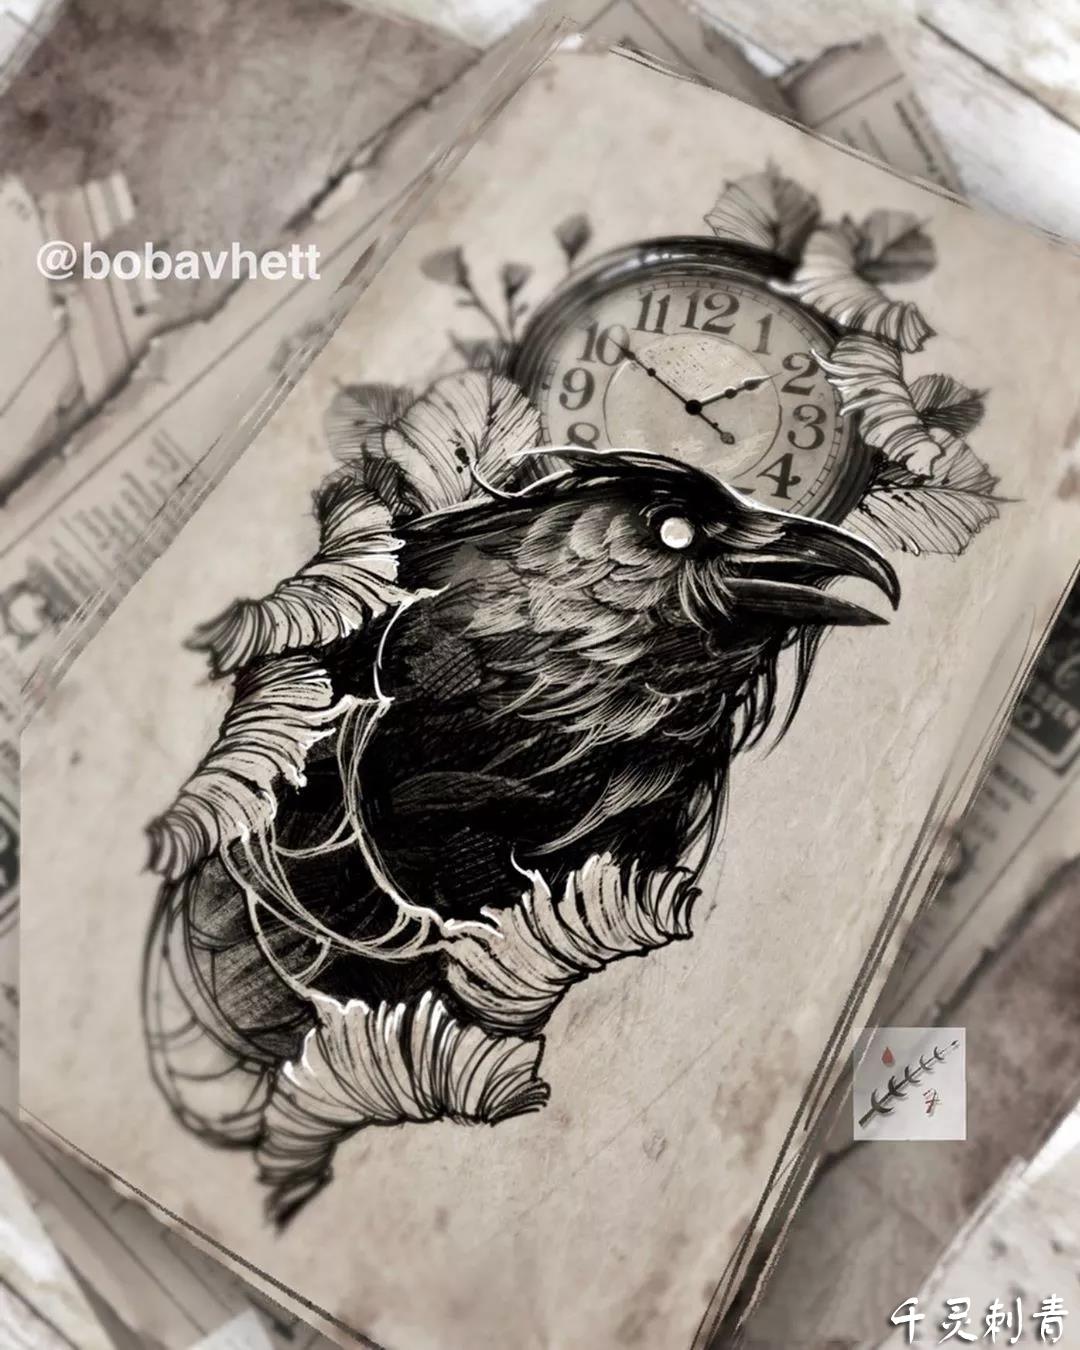 暗黑乌鸦时钟纹身,暗黑乌鸦时钟纹身手稿,暗黑乌鸦时钟纹身手稿图案